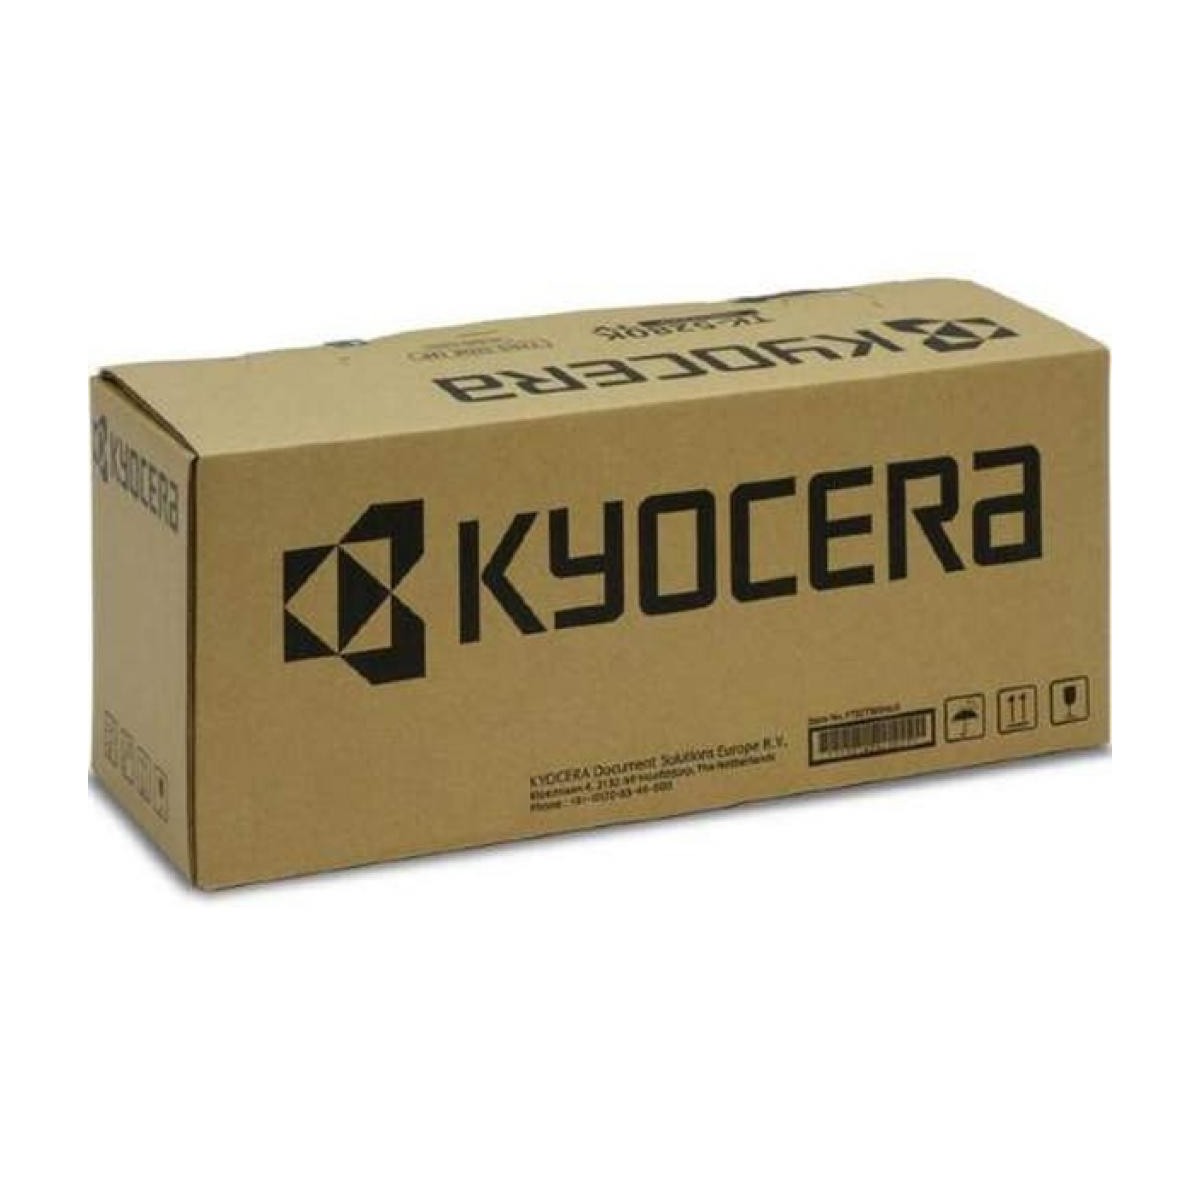 Kyocera FK-475(E) - FS-6525MFP - FS-6530MFP